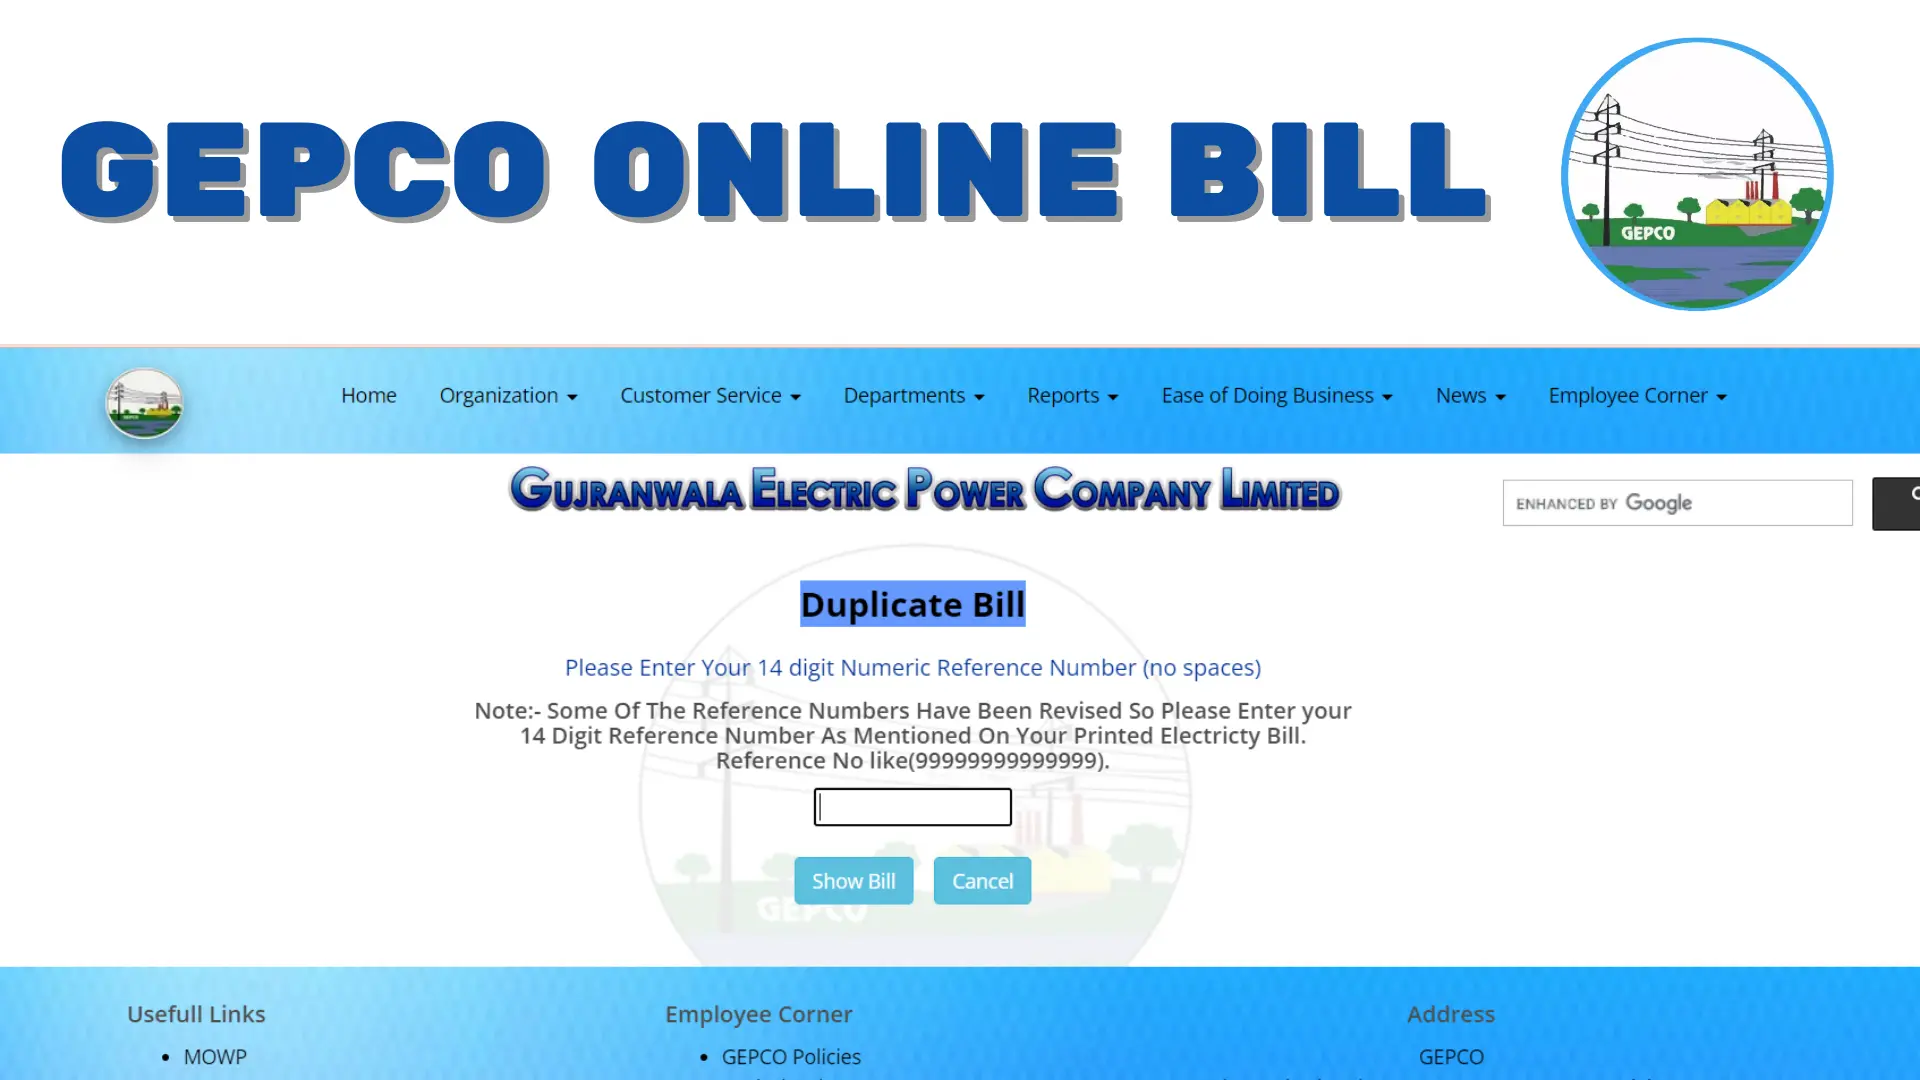 GEPCO Online Bill